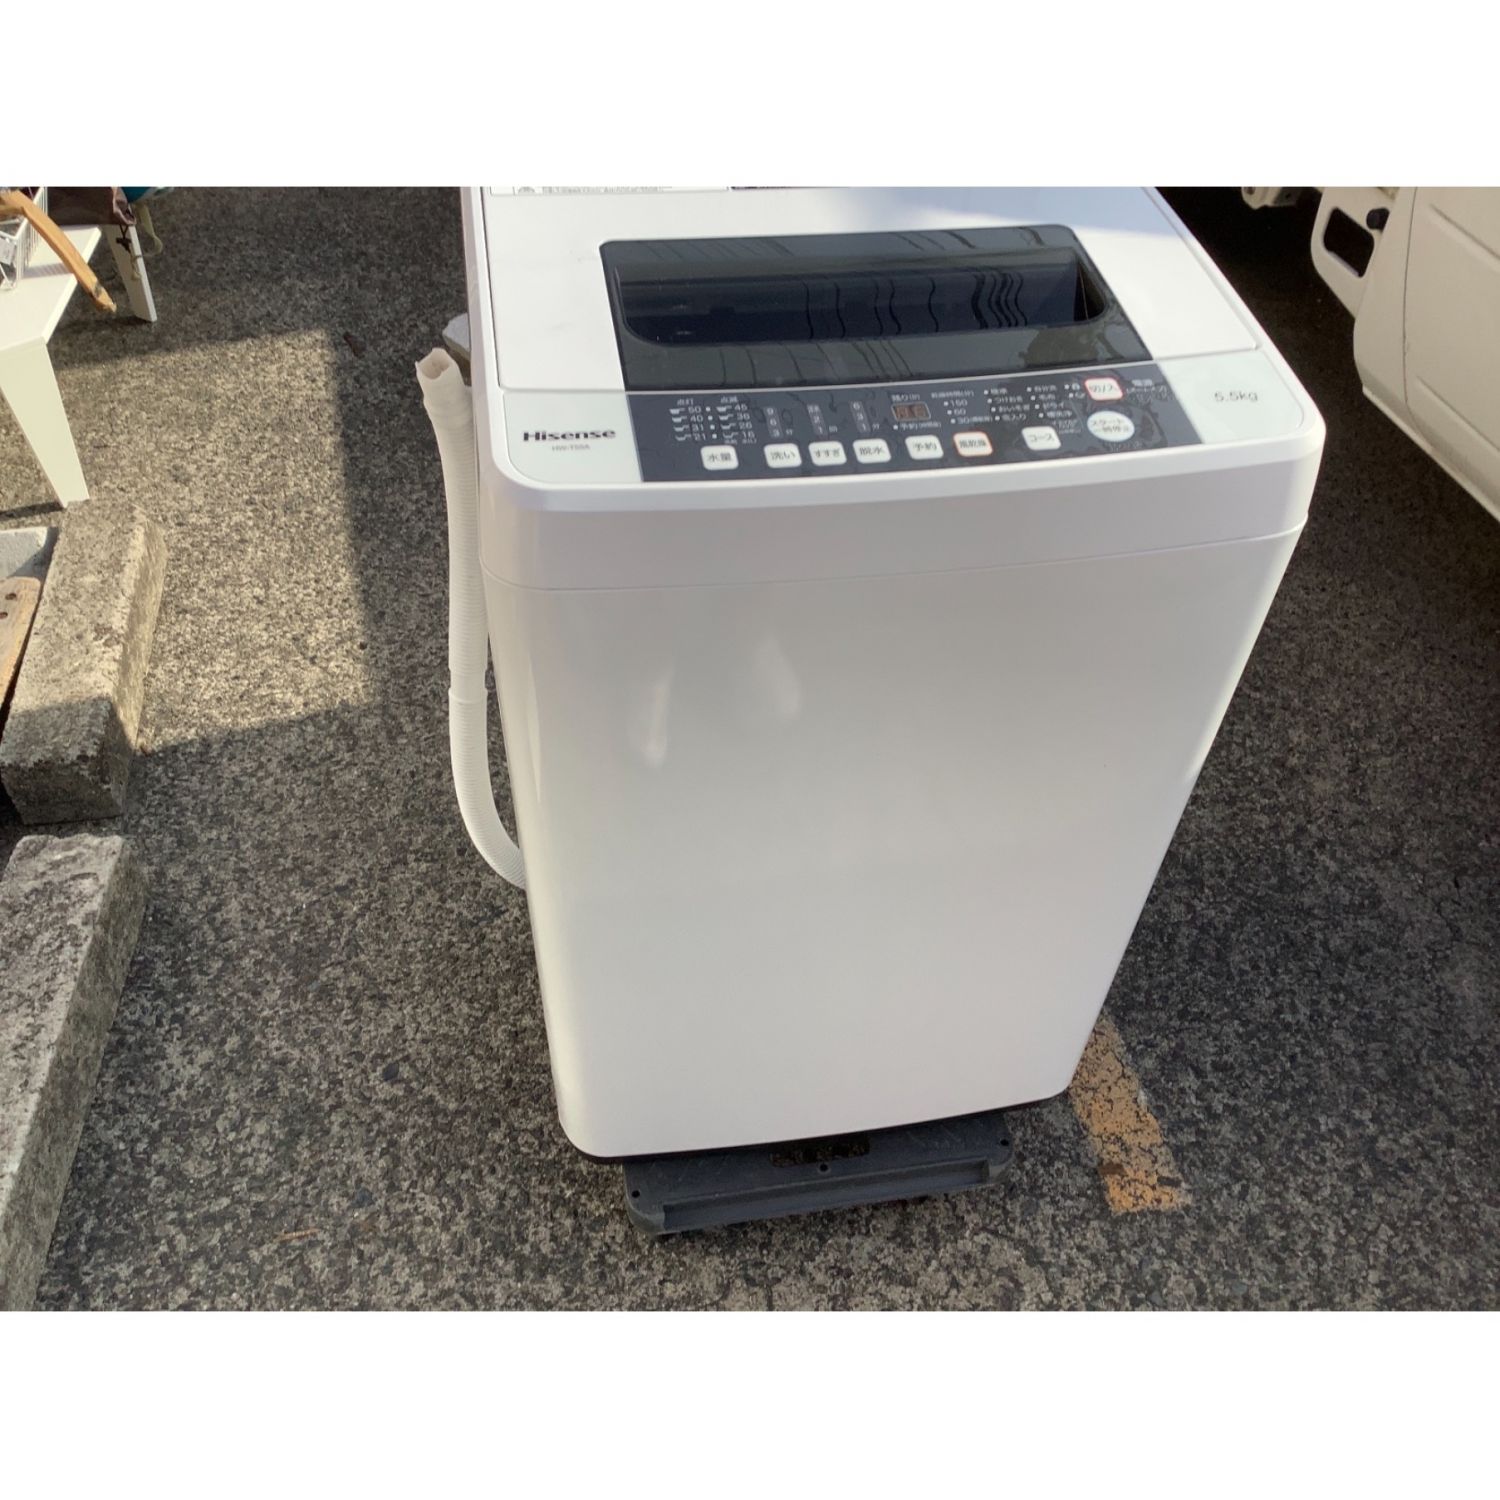 すすぎ 2017年製 ハイセンス HW-T55A fw7Vt-m72536576095 5.5kg 洗濯機 